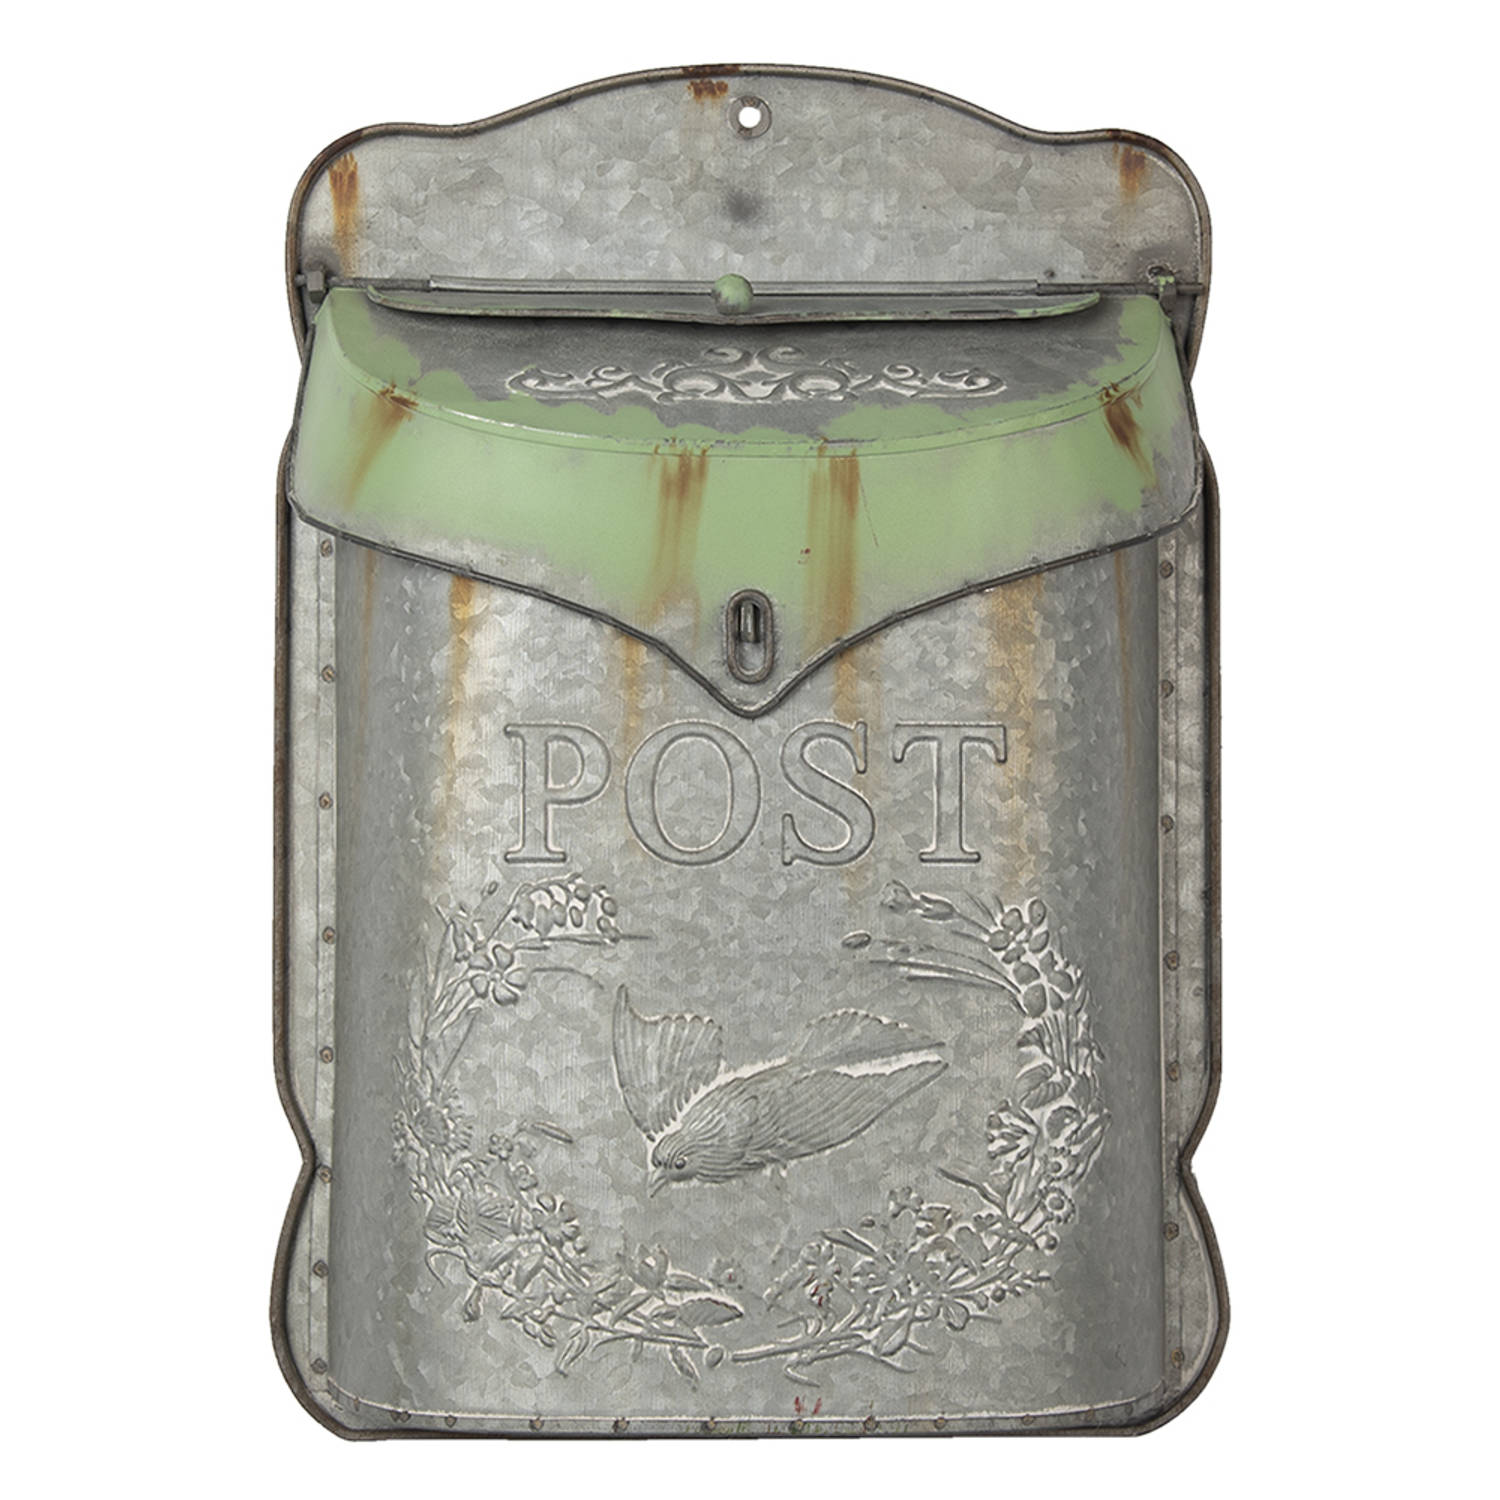 HAES DECO - Brievenbus vintage grijs / groen metaal met Vogel bedrukt en tekst "POST", formaat 27x8x39 cm